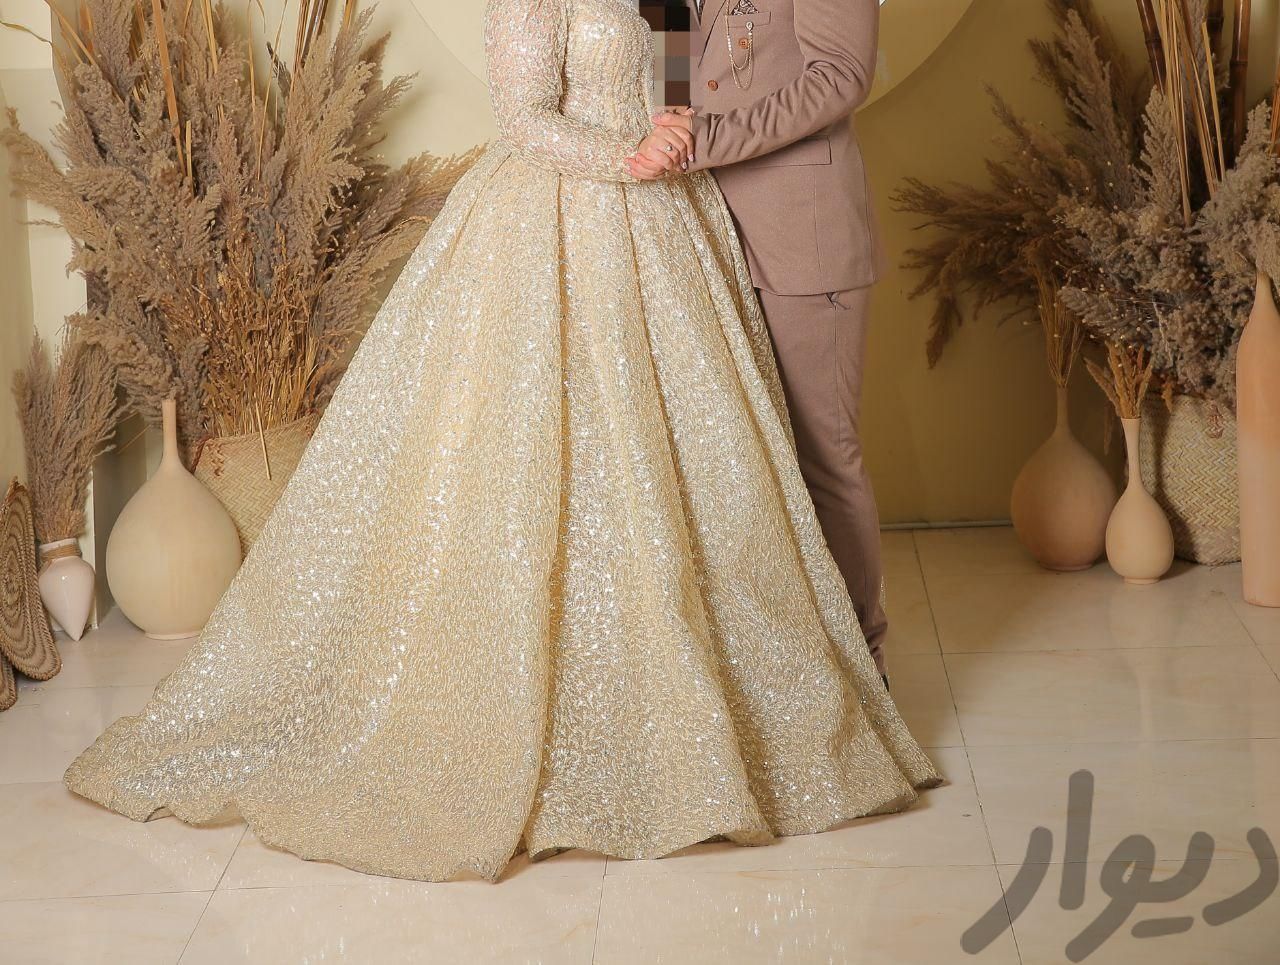 اجاره لباس عروس عقد نامردی بله برون|خدمات پذیرایی/مراسم|تهران, خواجه نظام الملک|دیوار